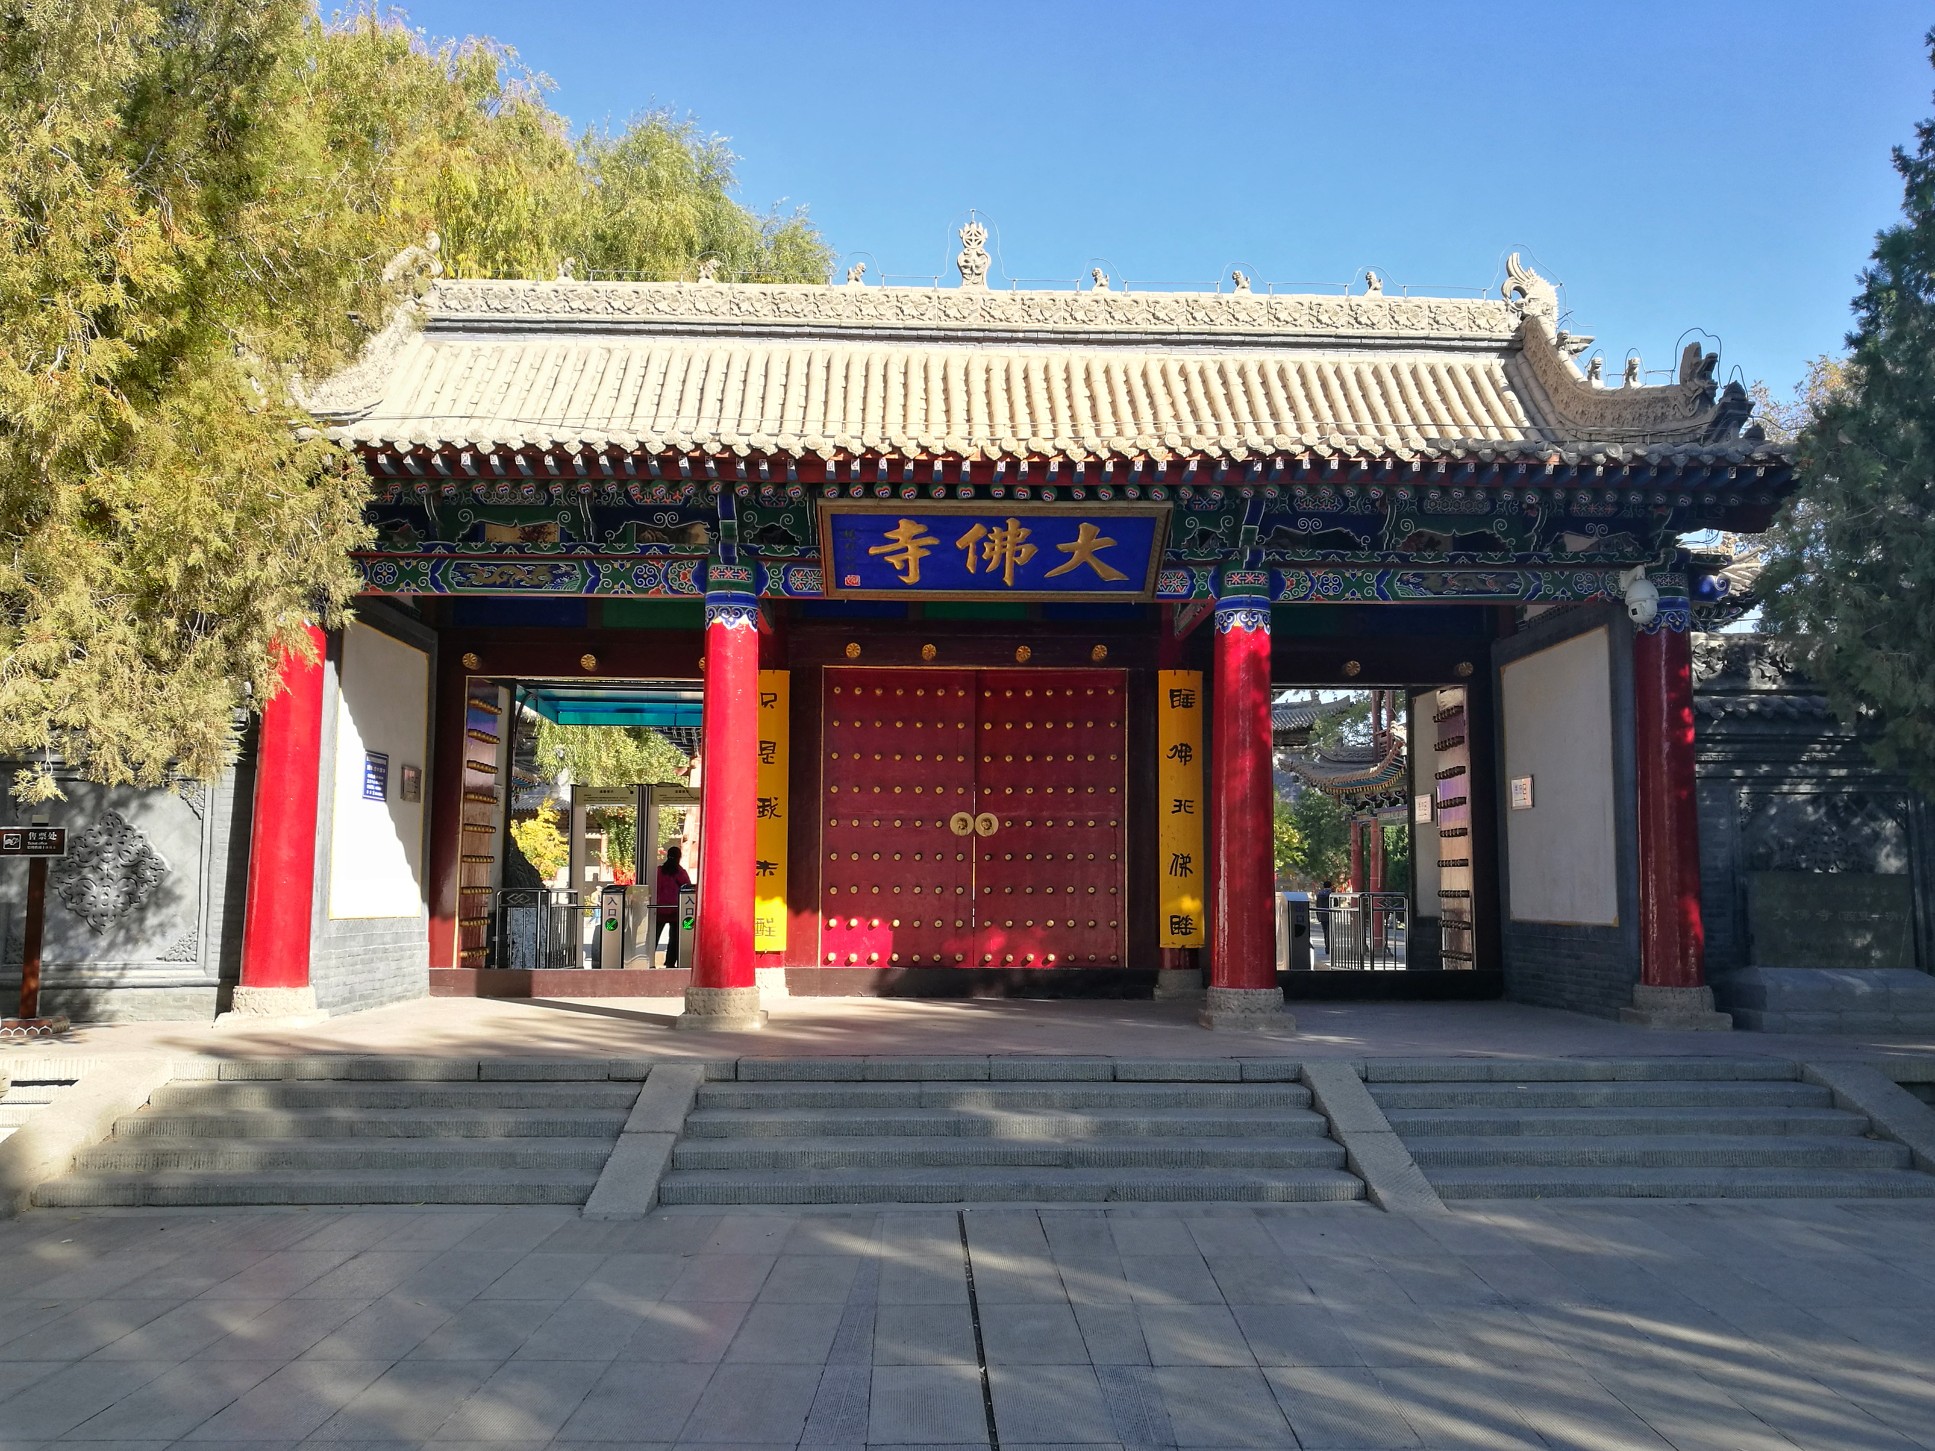 大佛寺景区位于甘肃省张掖市西南隅,是丝绸之路上的一处重要名胜古迹